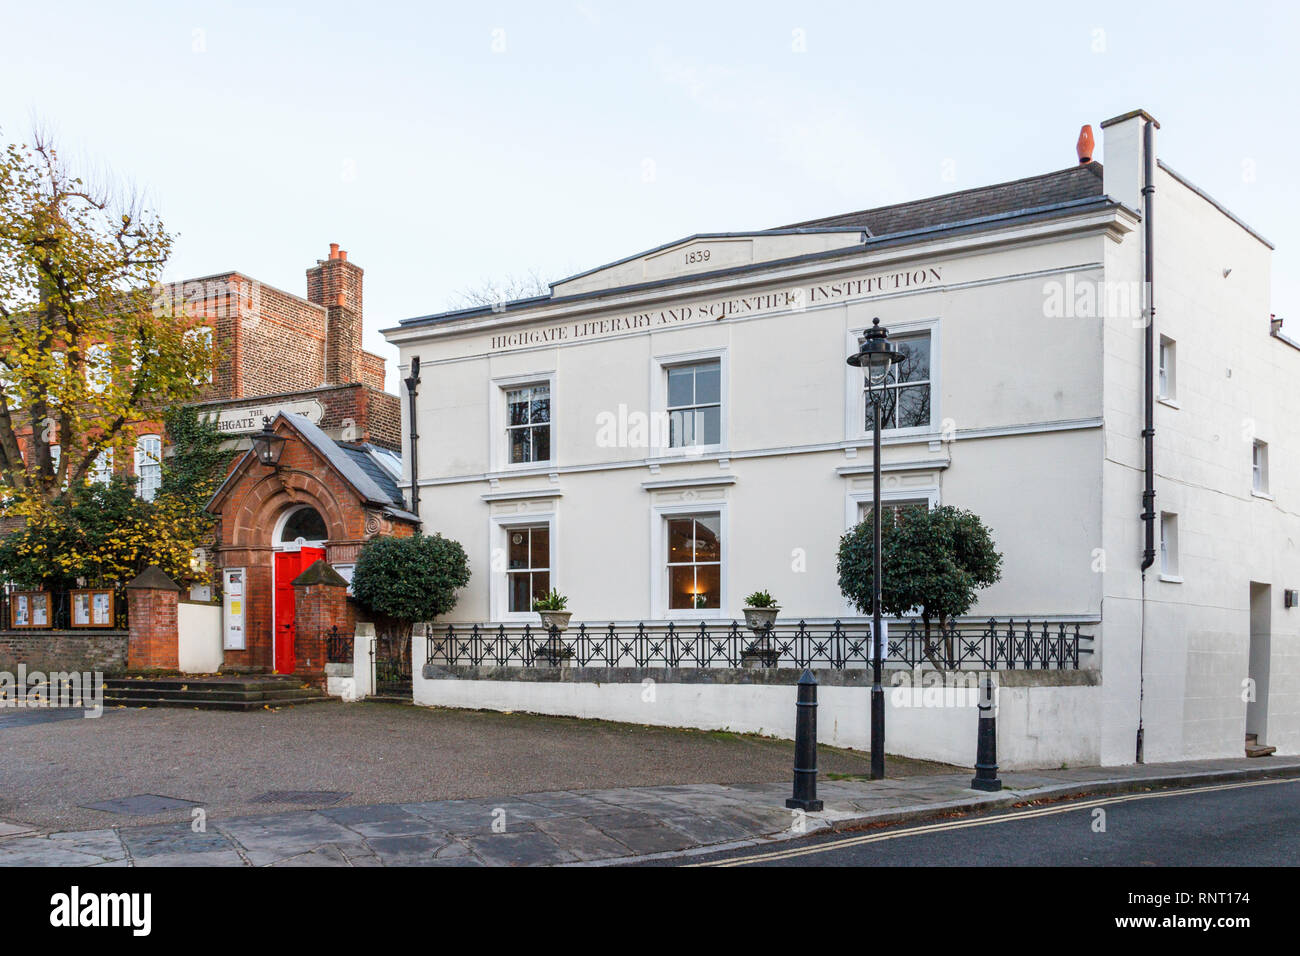 La Highgate letterari e istituzione scientifica su South Grove, Highgate Village, London, Regno Unito Foto Stock